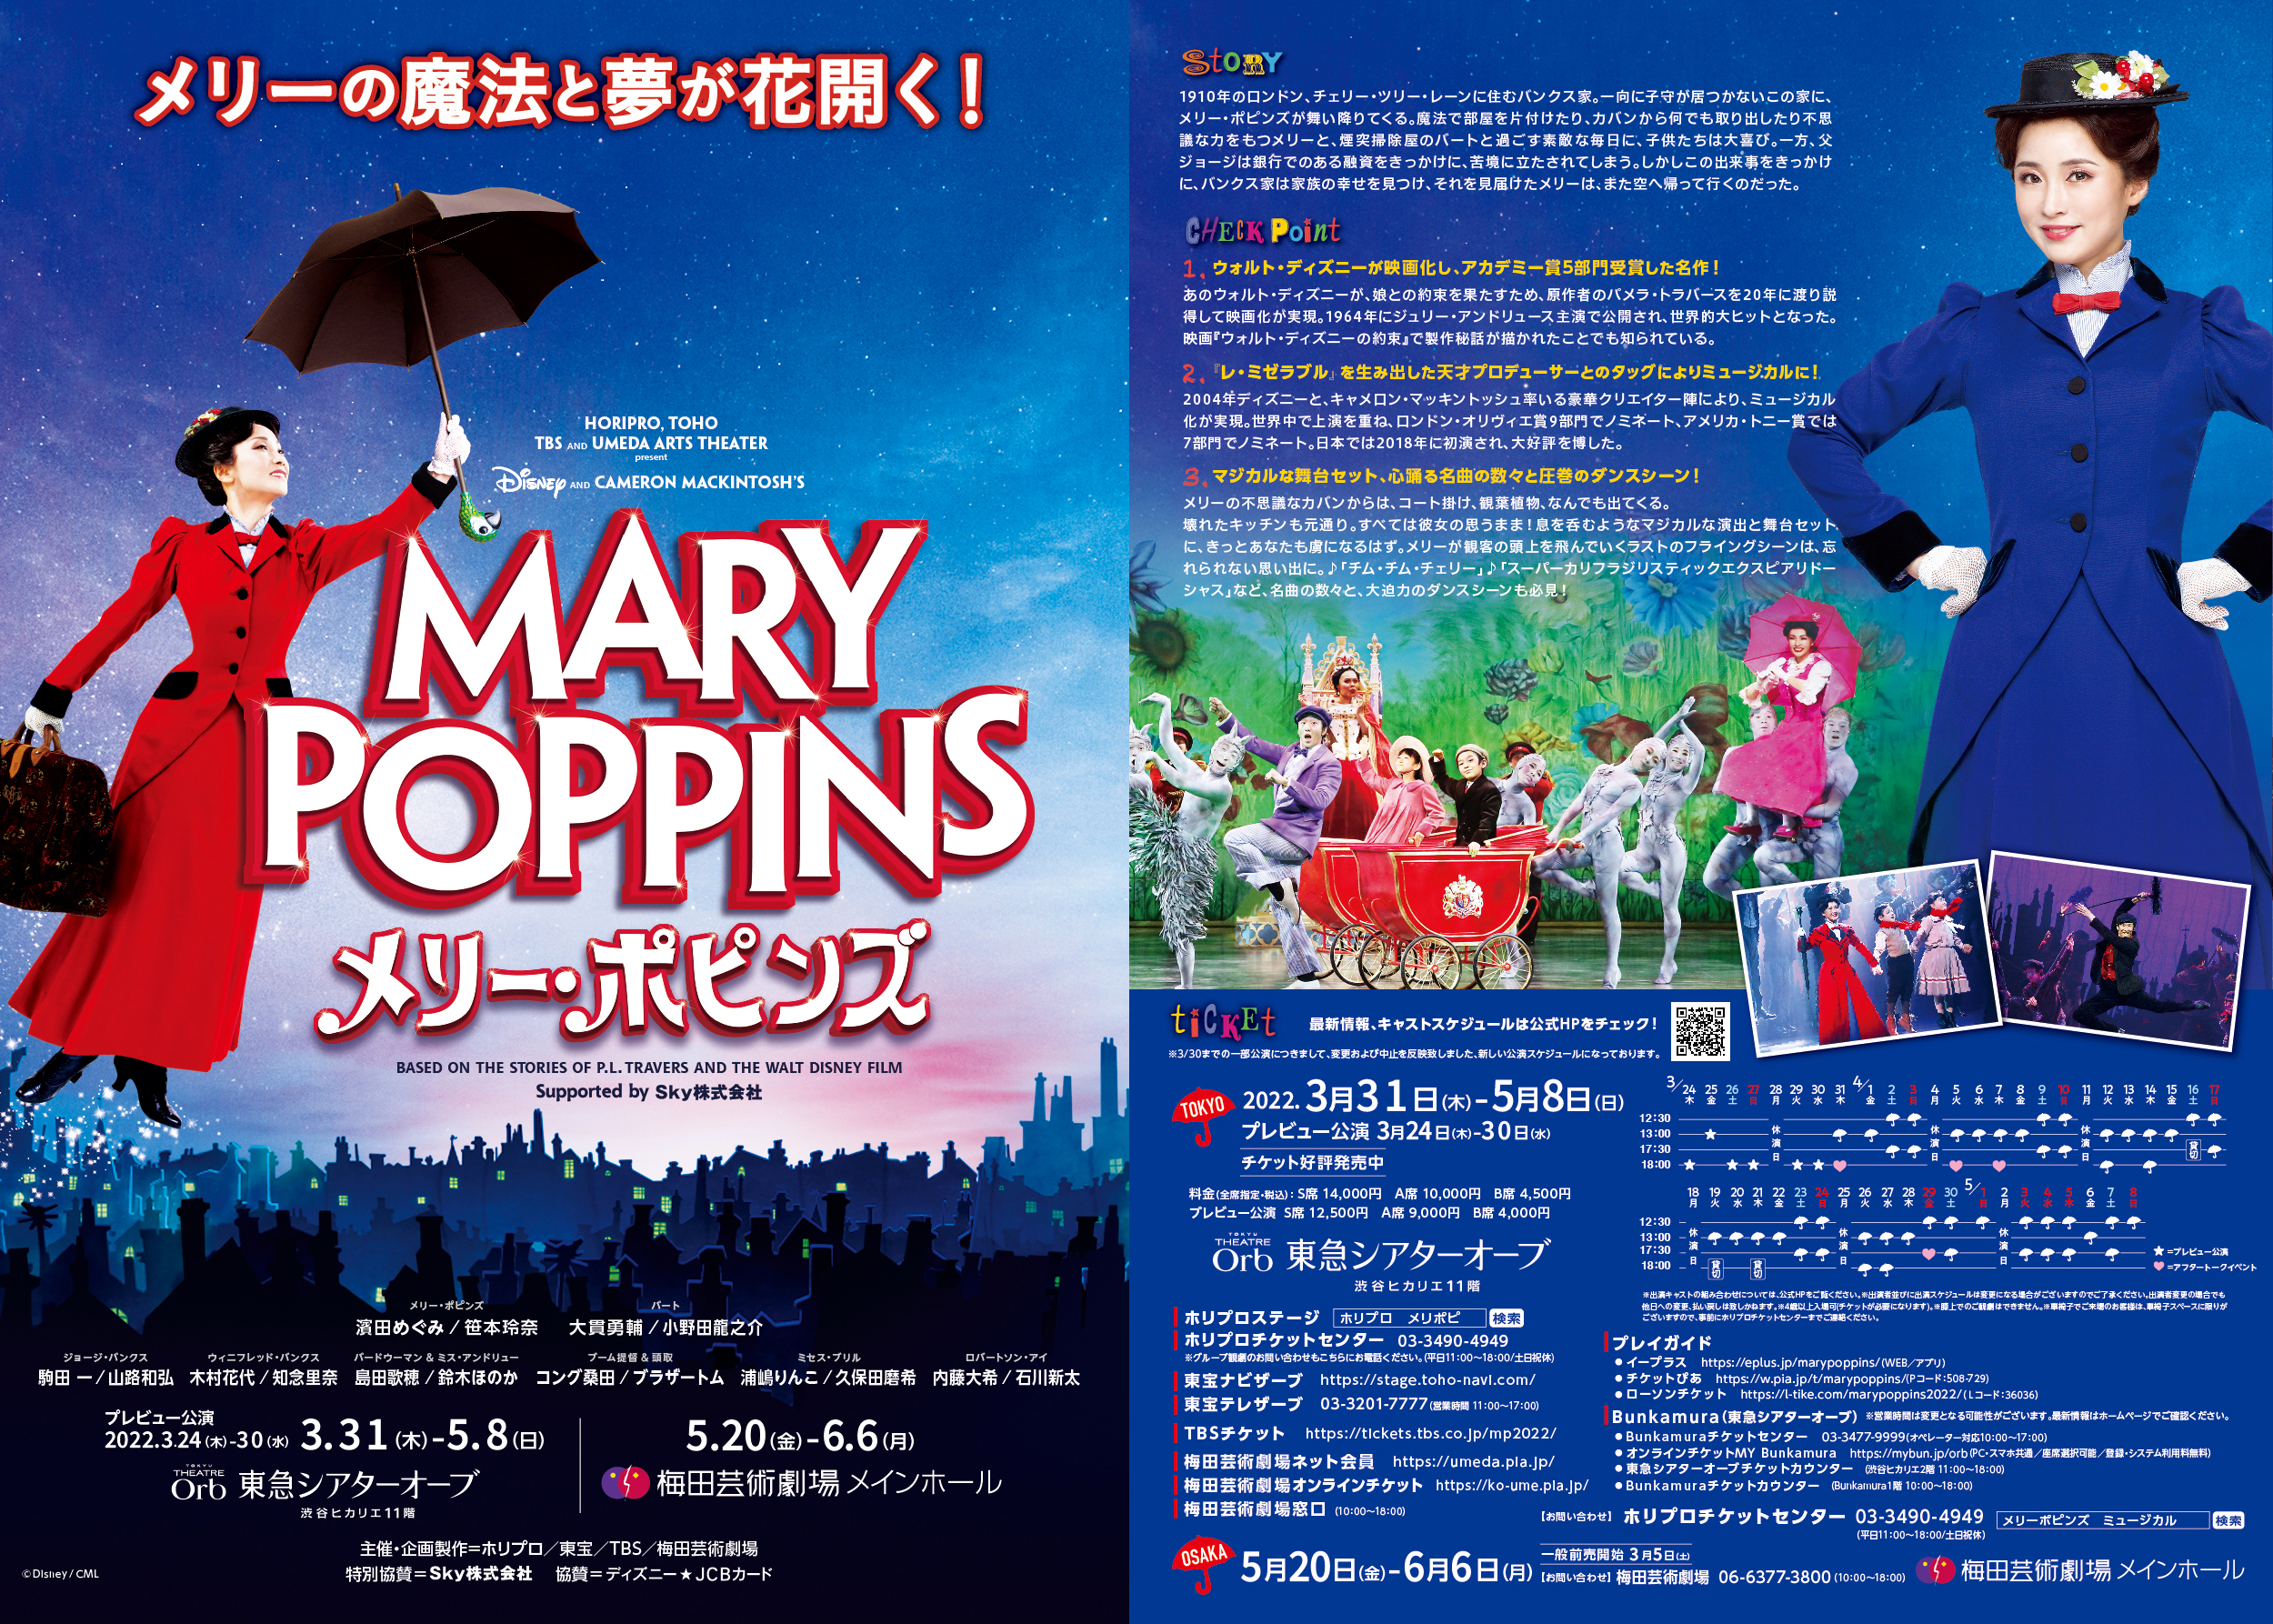 ミュージカル メリー ポピンズ 大阪公演明日開幕 出演者コメント 新プロモーション映像を公開 株式会社ホリプロのプレスリリース